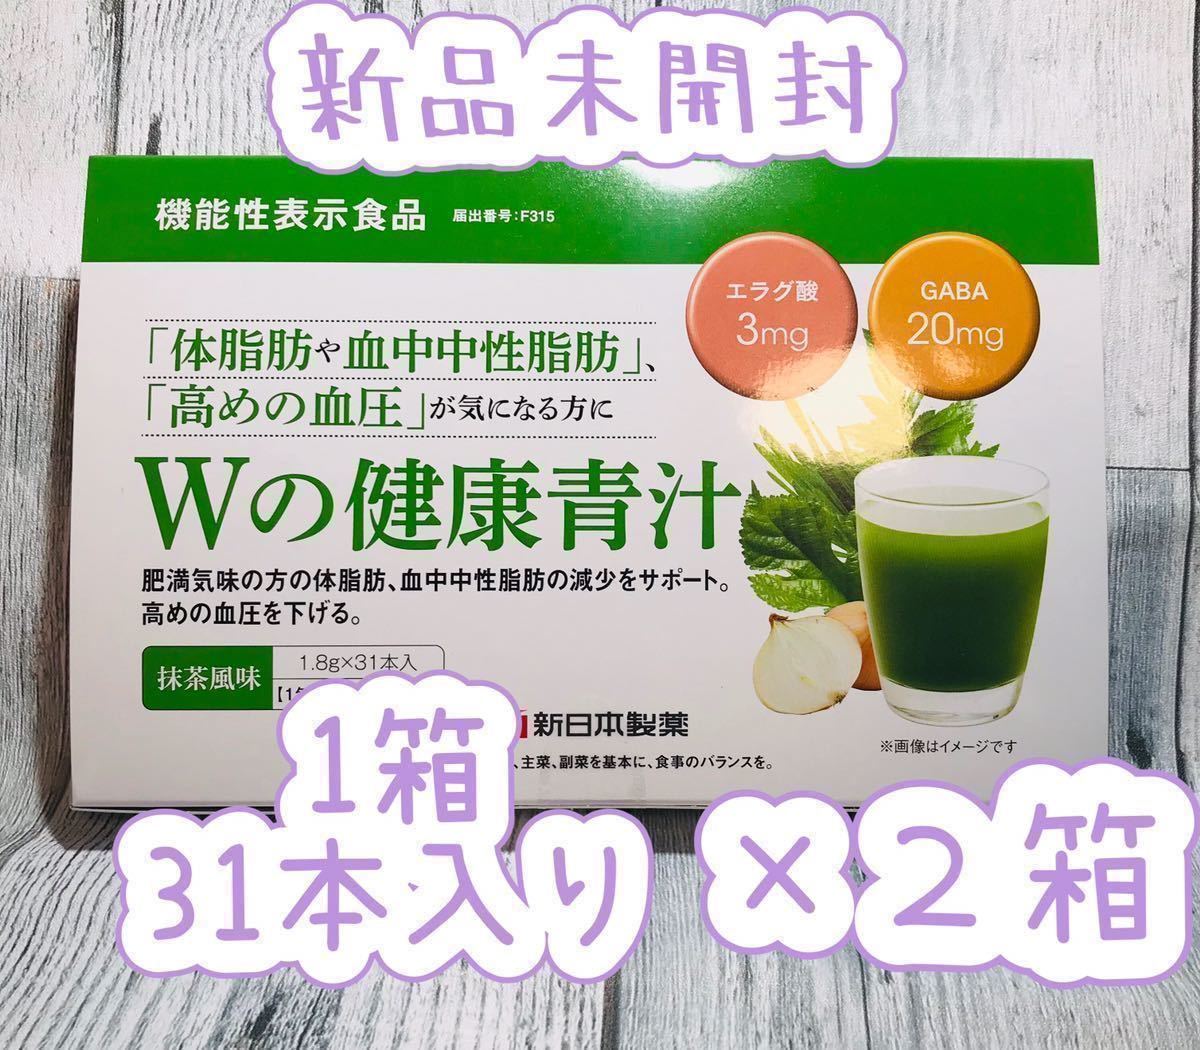 新日本製薬 生活習慣サポート Wの健康青汁2箱セット 通販